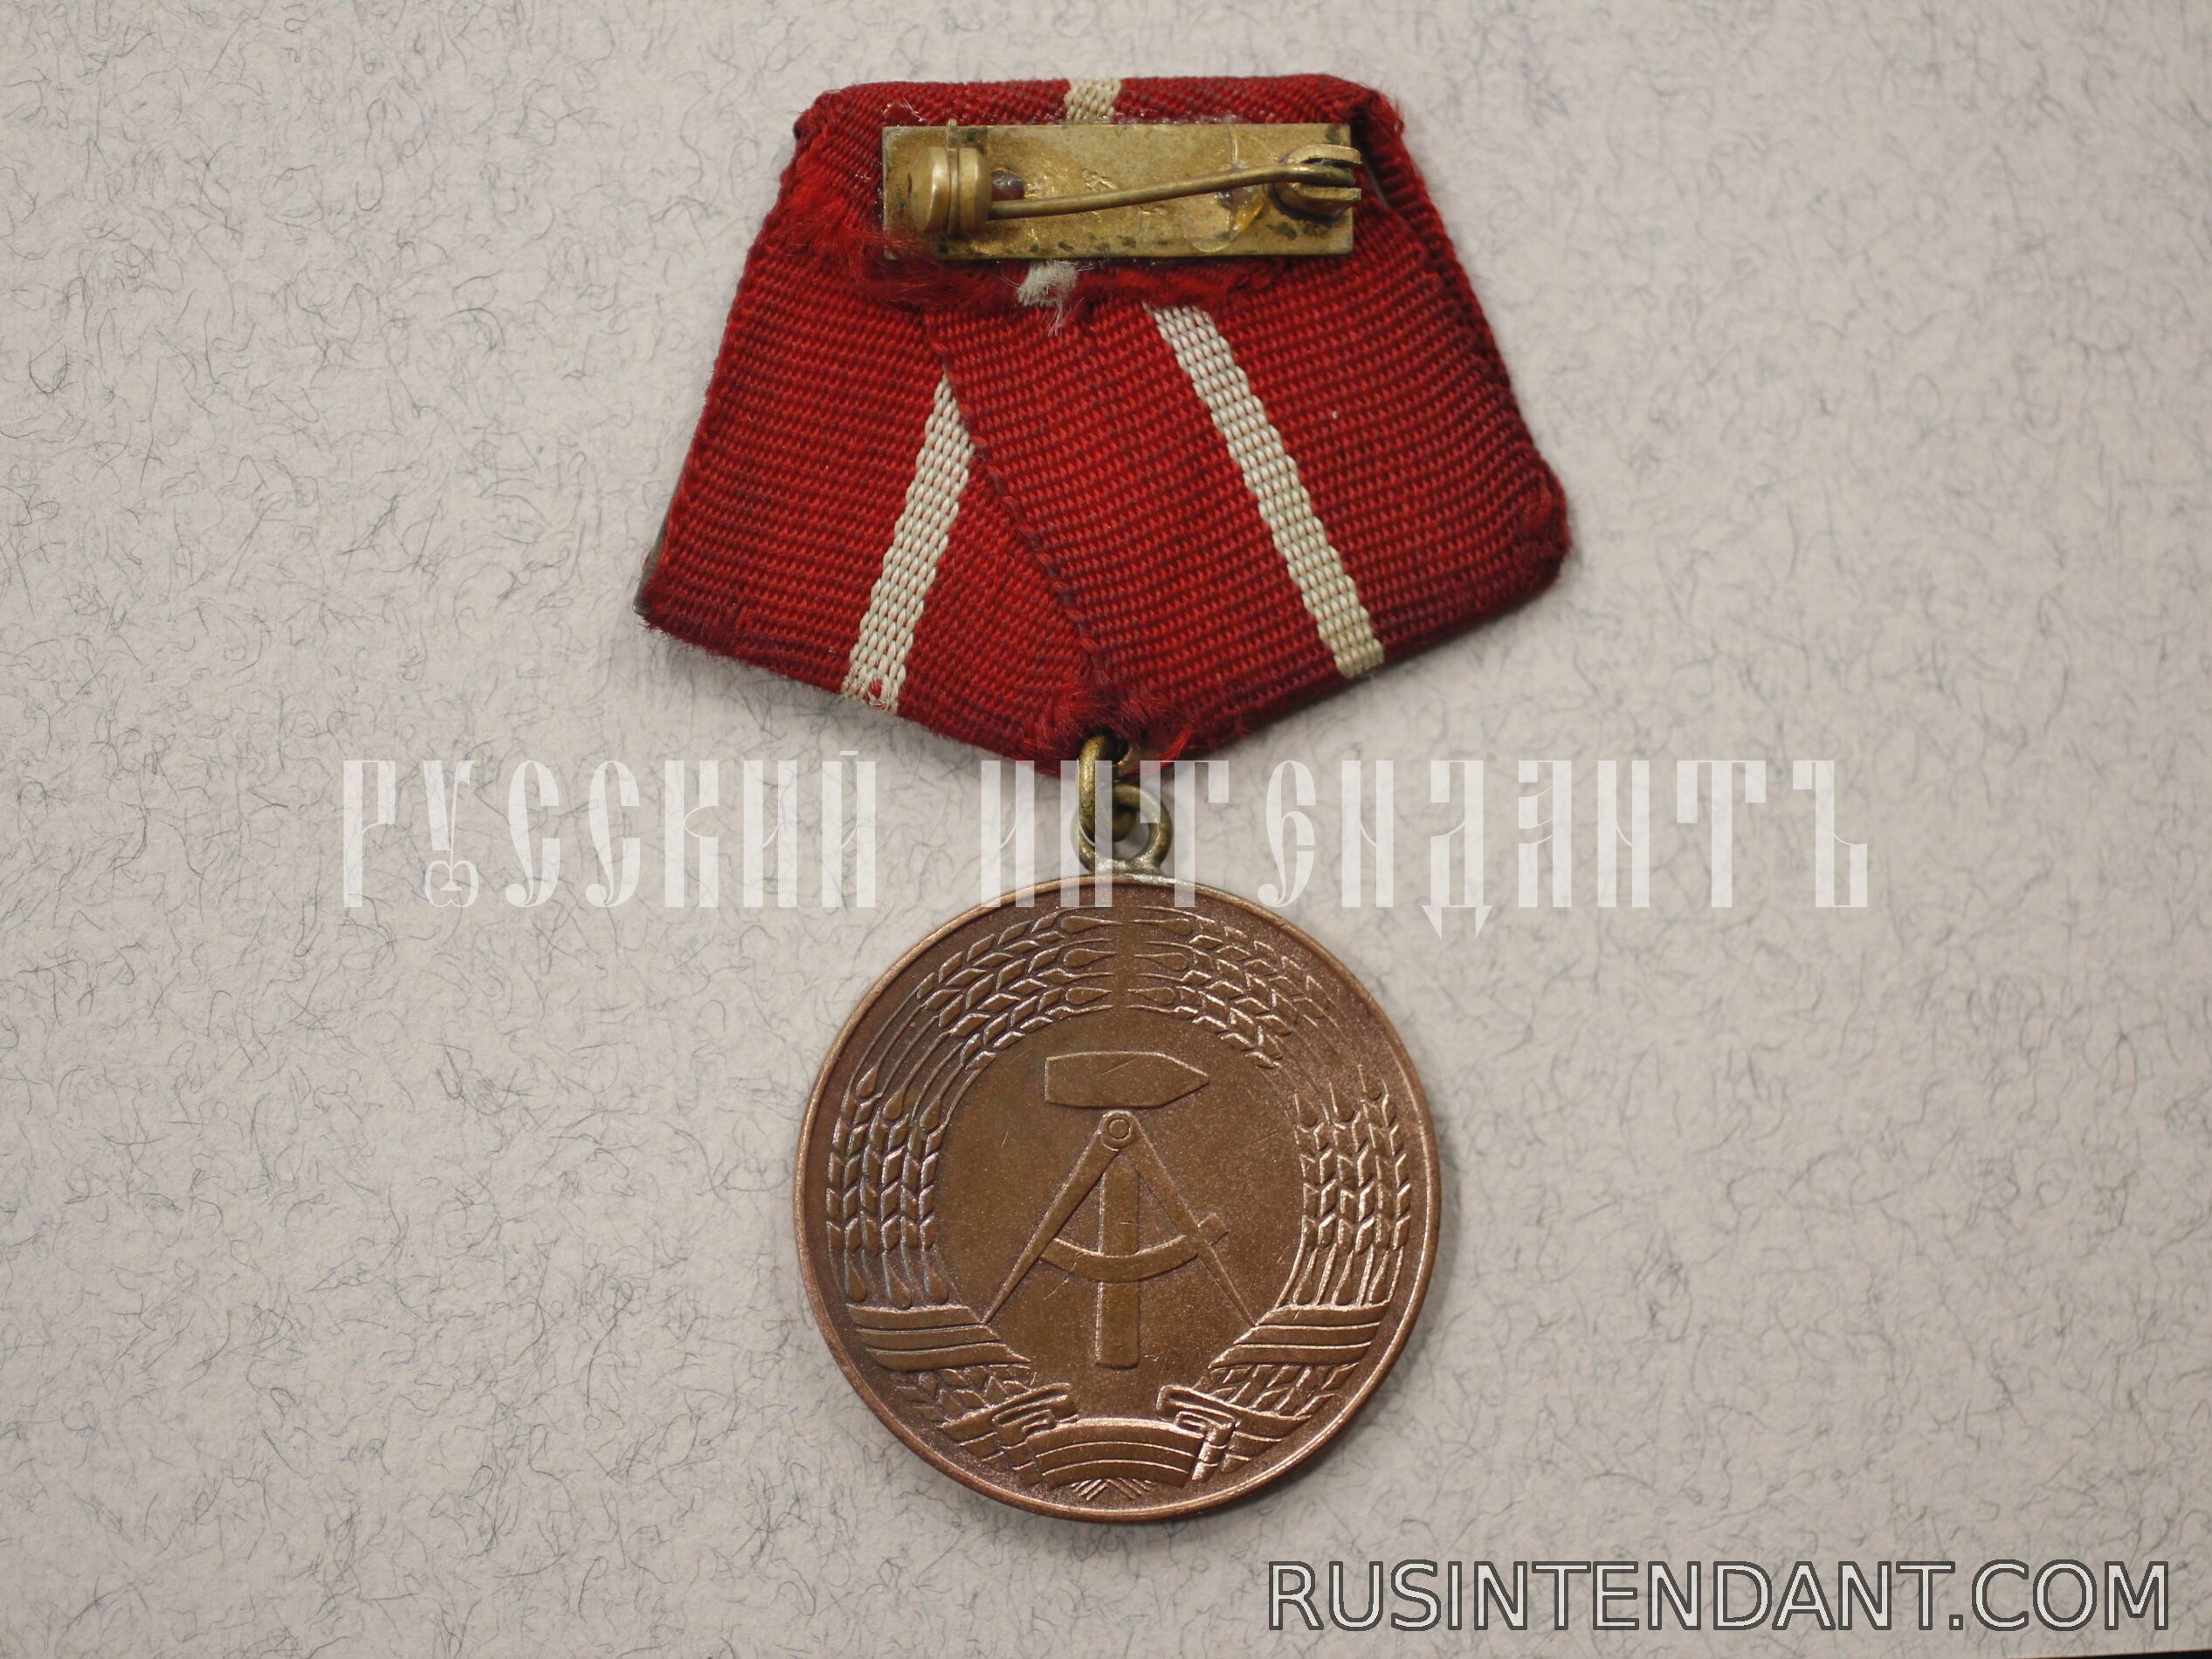 Фото 2: Медаль «Боевых групп рабочего класса 3 степень» 